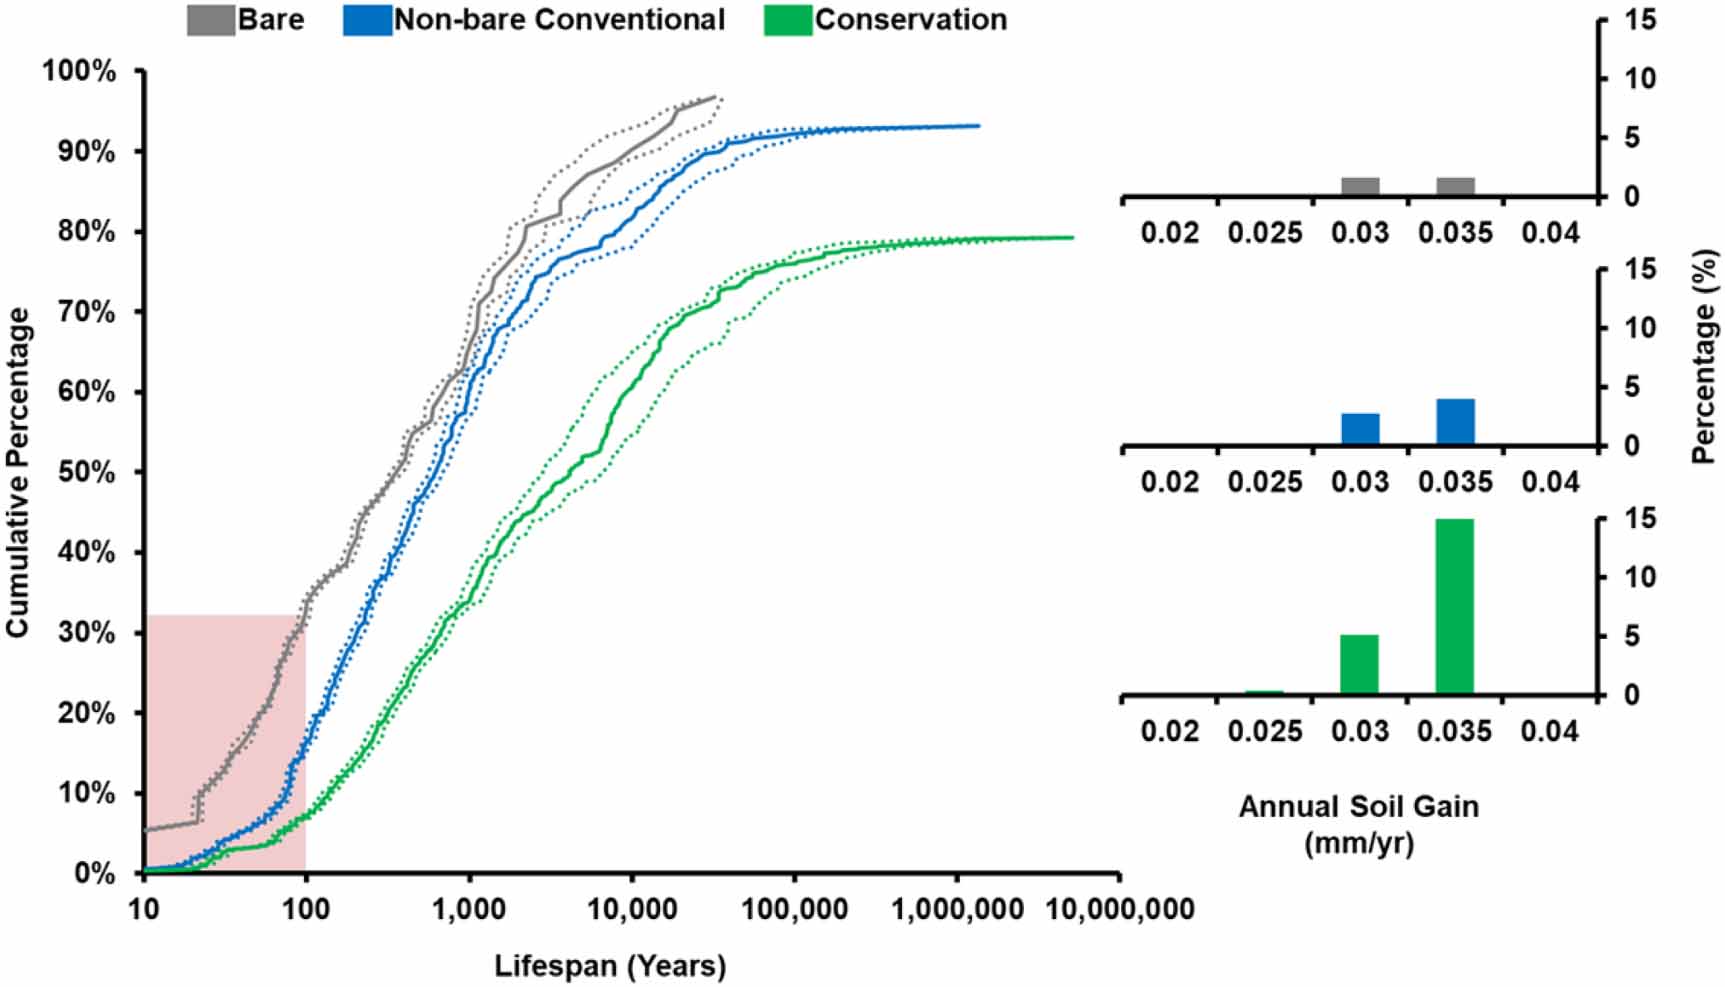 X-aksen viser, hvor lang levetid de forskellige arealer har alt efter dyrkningsmetoderne. Y-aksen viser andelen af arealerne. Eks. har ca. 30 pct. af den bare jord (grå linje) en forventet levetid på 100 år. De stiplede linjer viser usikkerheden